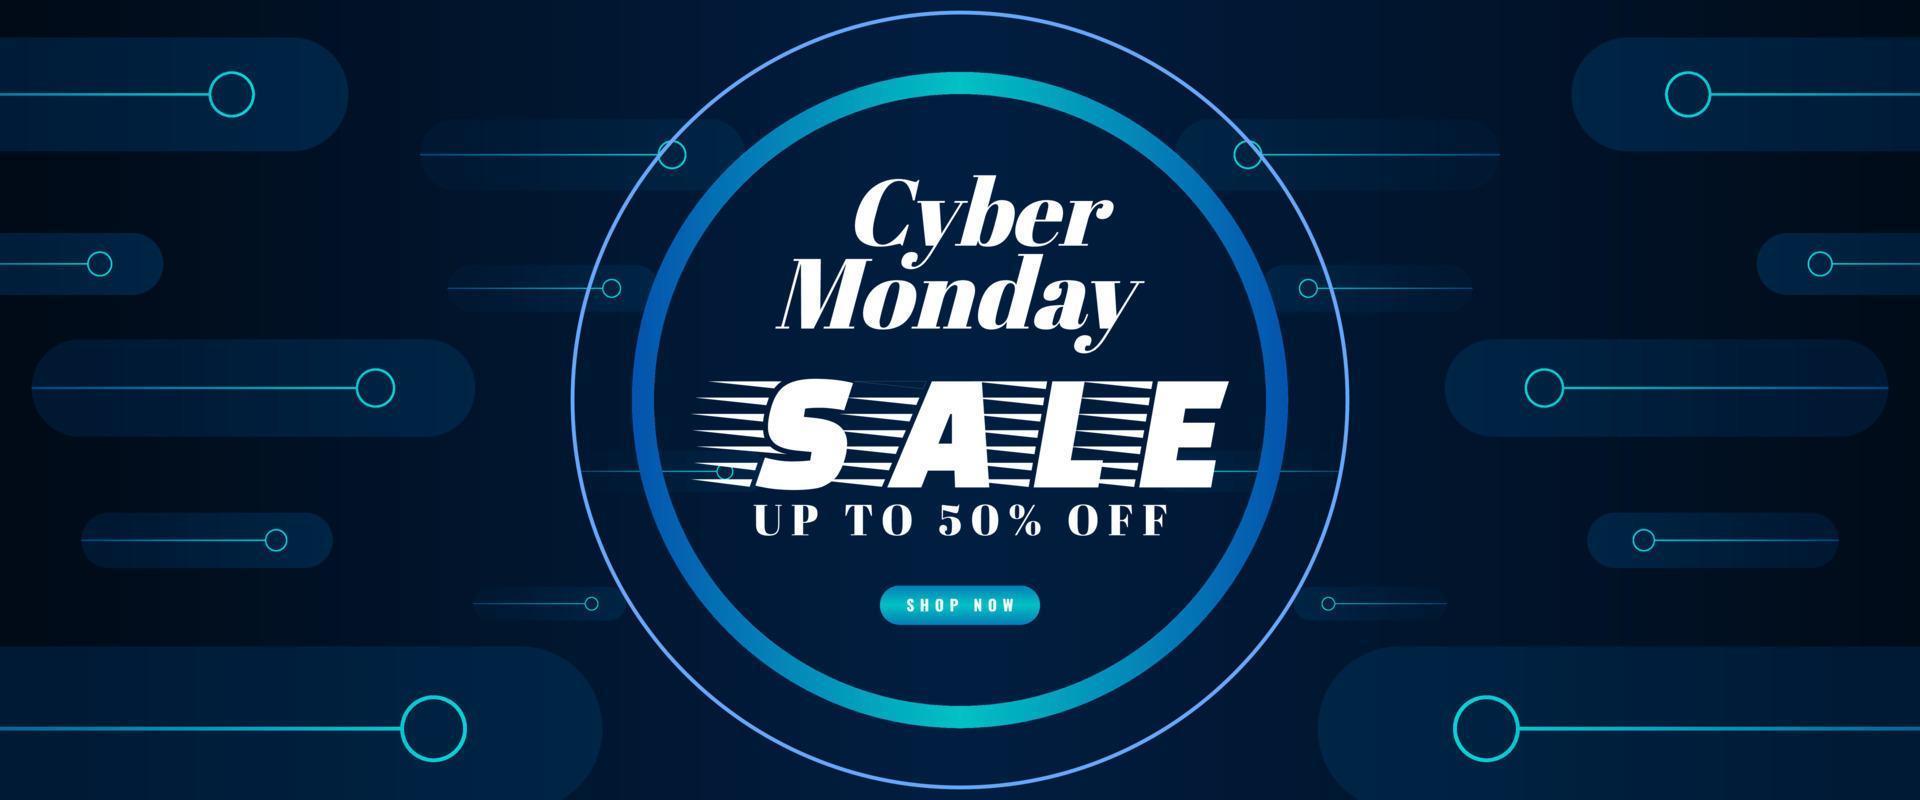 disegno del modello di banner di vendita cyber lunedì con effetto luce blu su sfondo scuro per poster pubblicitari o promozioni aziendali vettore